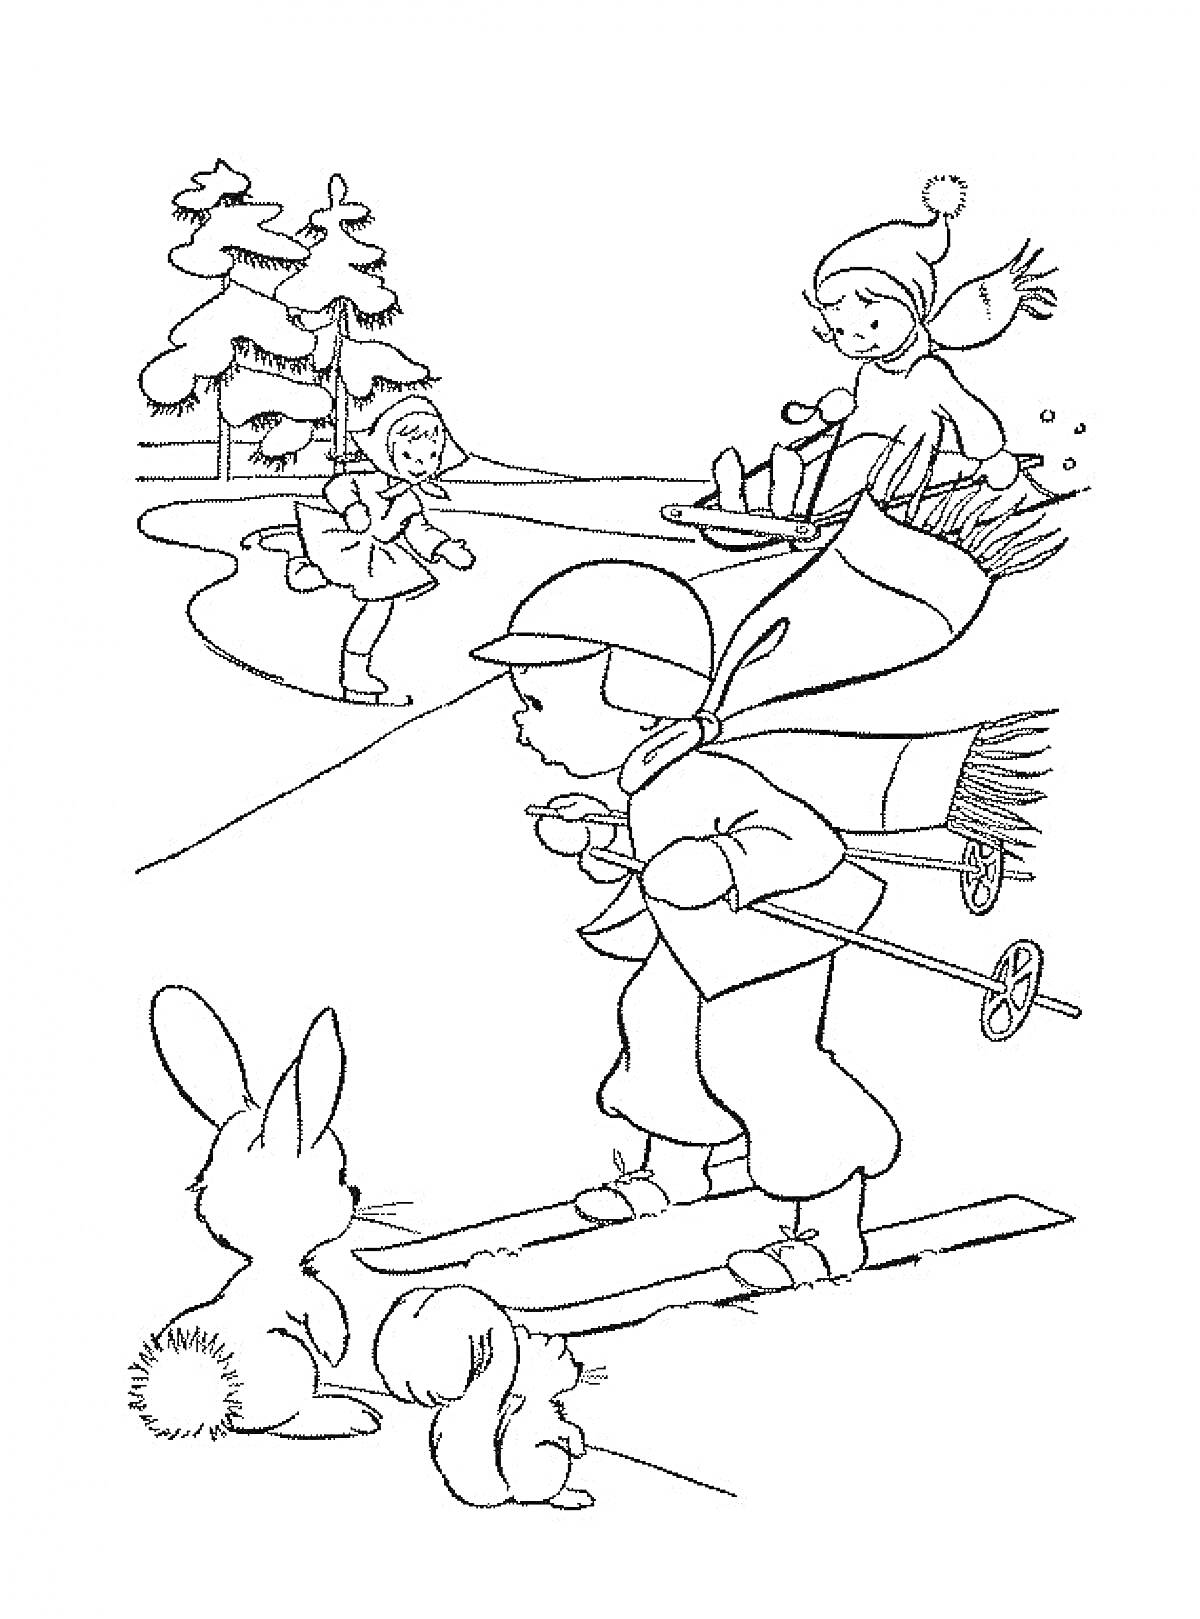 Раскраска Лыжник с палками, мальчик на коньках, девочка на санках, деревья, два кролика